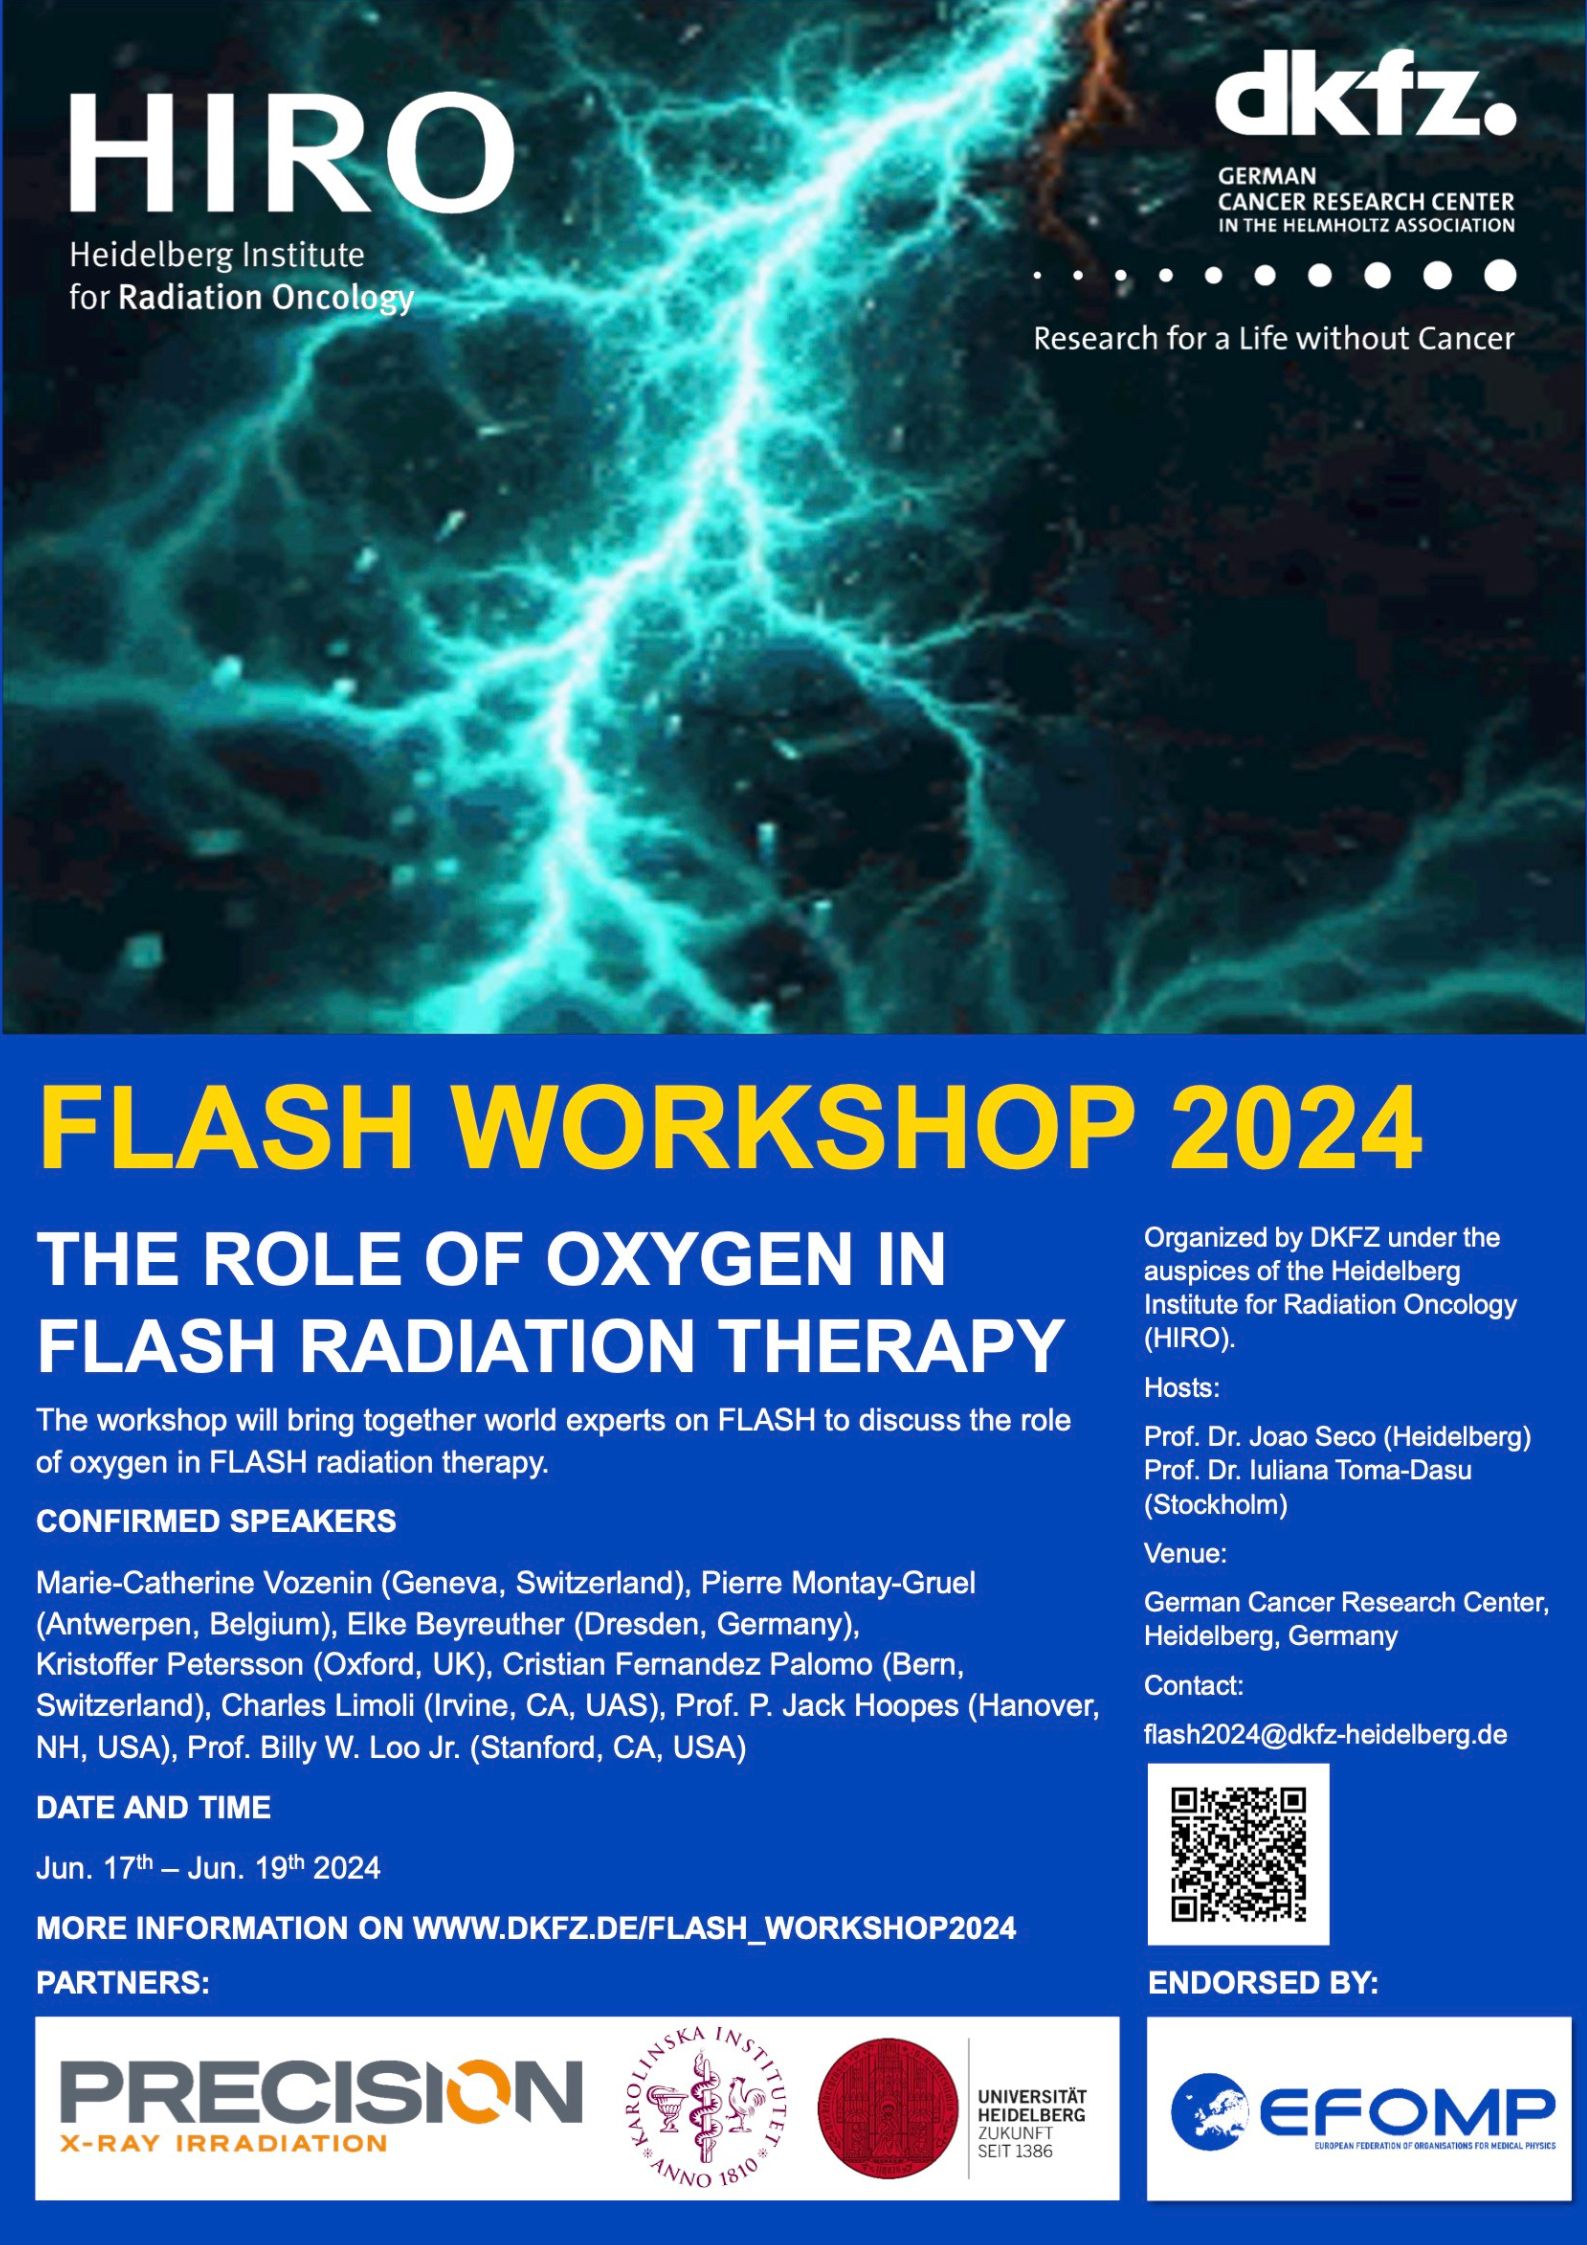 Taller Flash radiotherapy es impartido por Centro Alemán de Investigación del Cáncer (DKFZ)